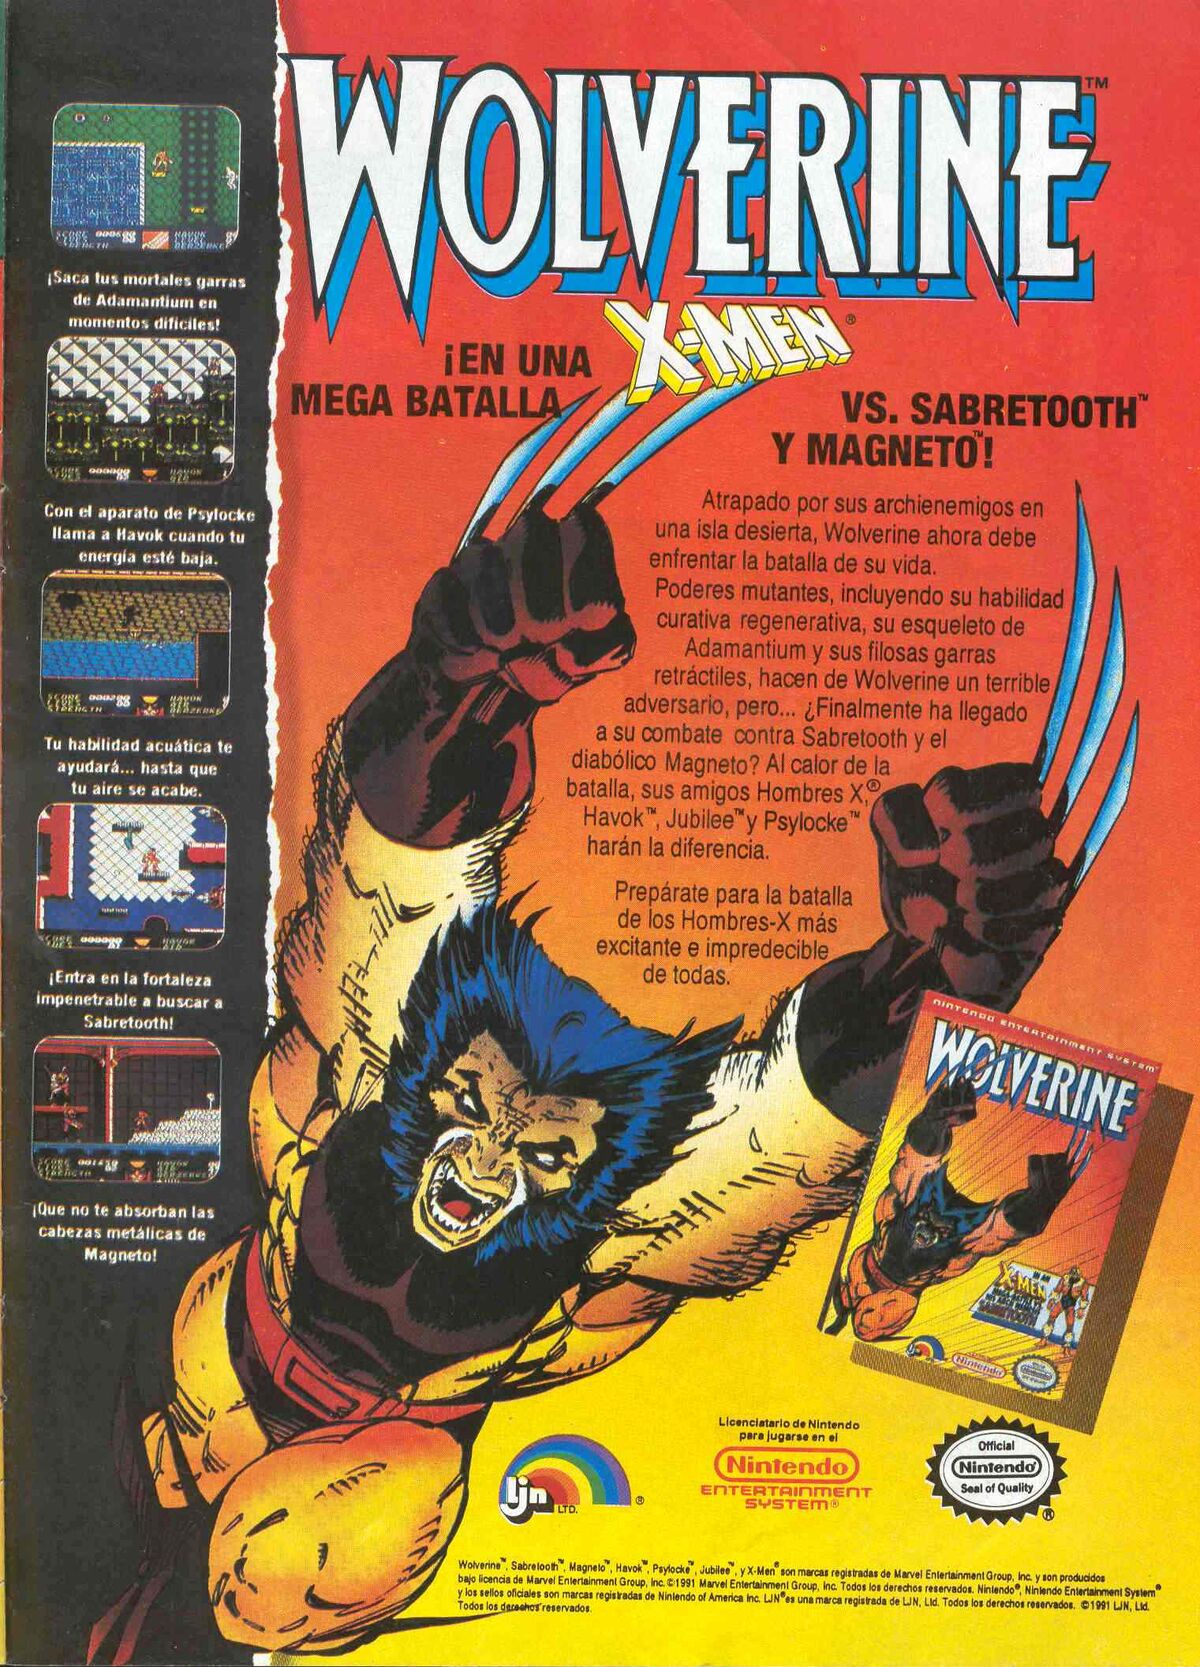 Wolverine (videojuego), Marvel Wiki